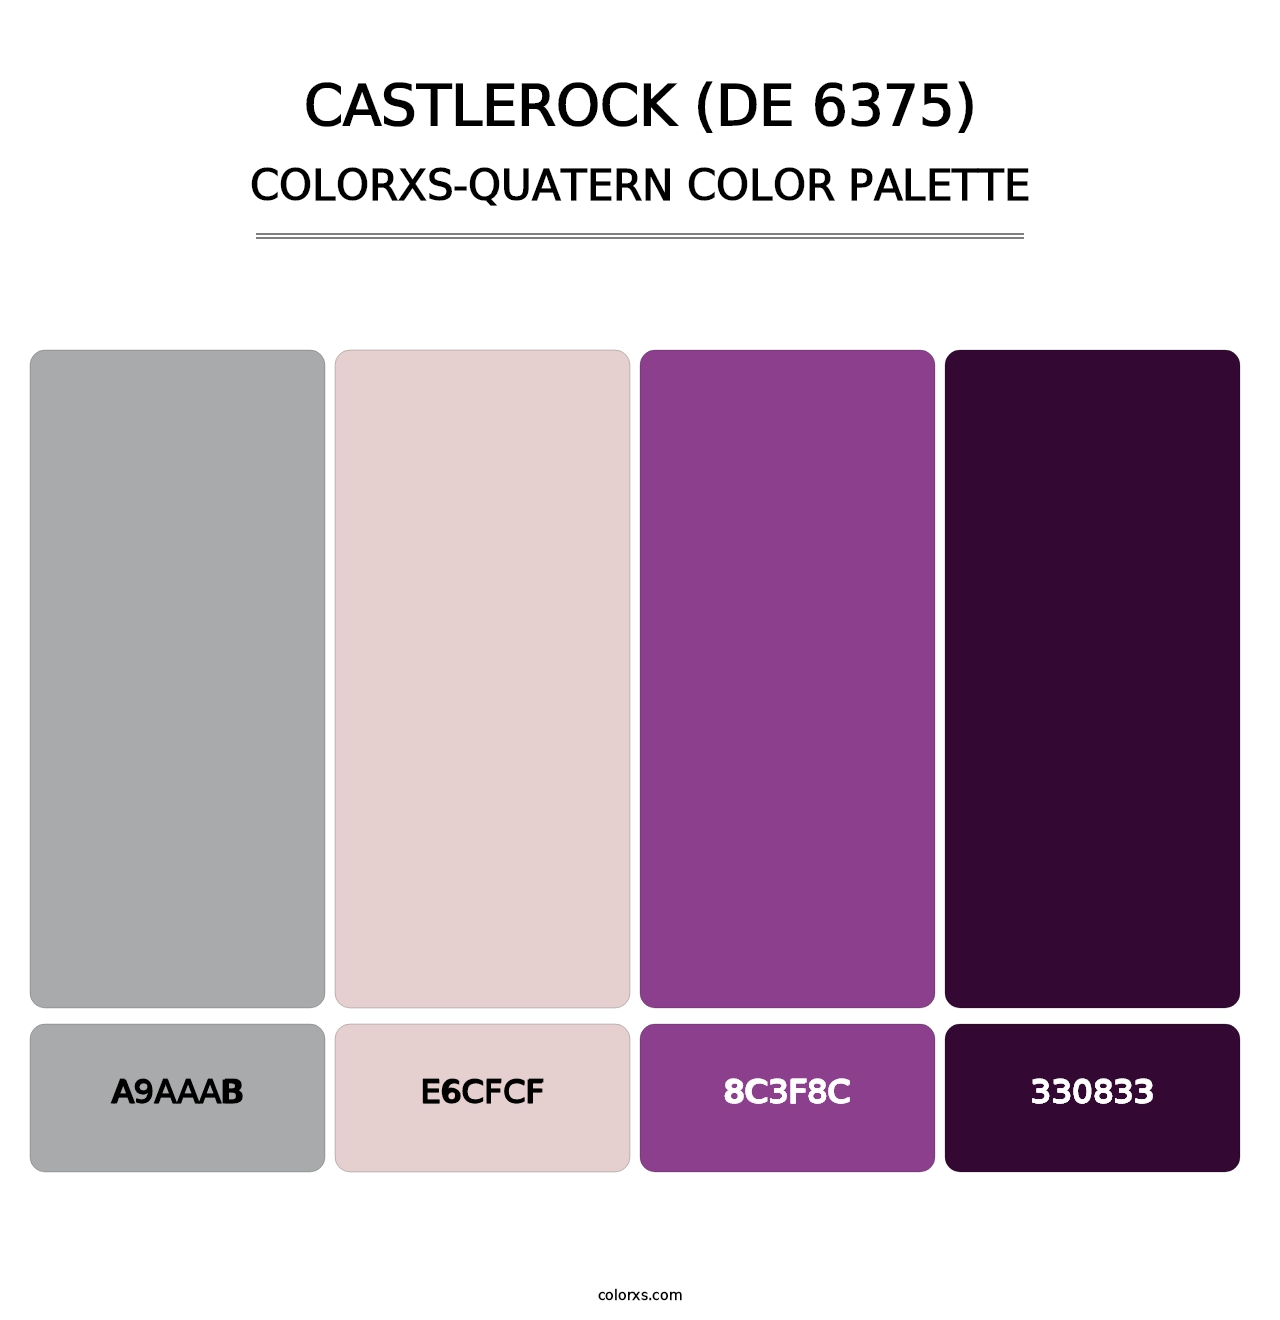 Castlerock (DE 6375) - Colorxs Quatern Palette